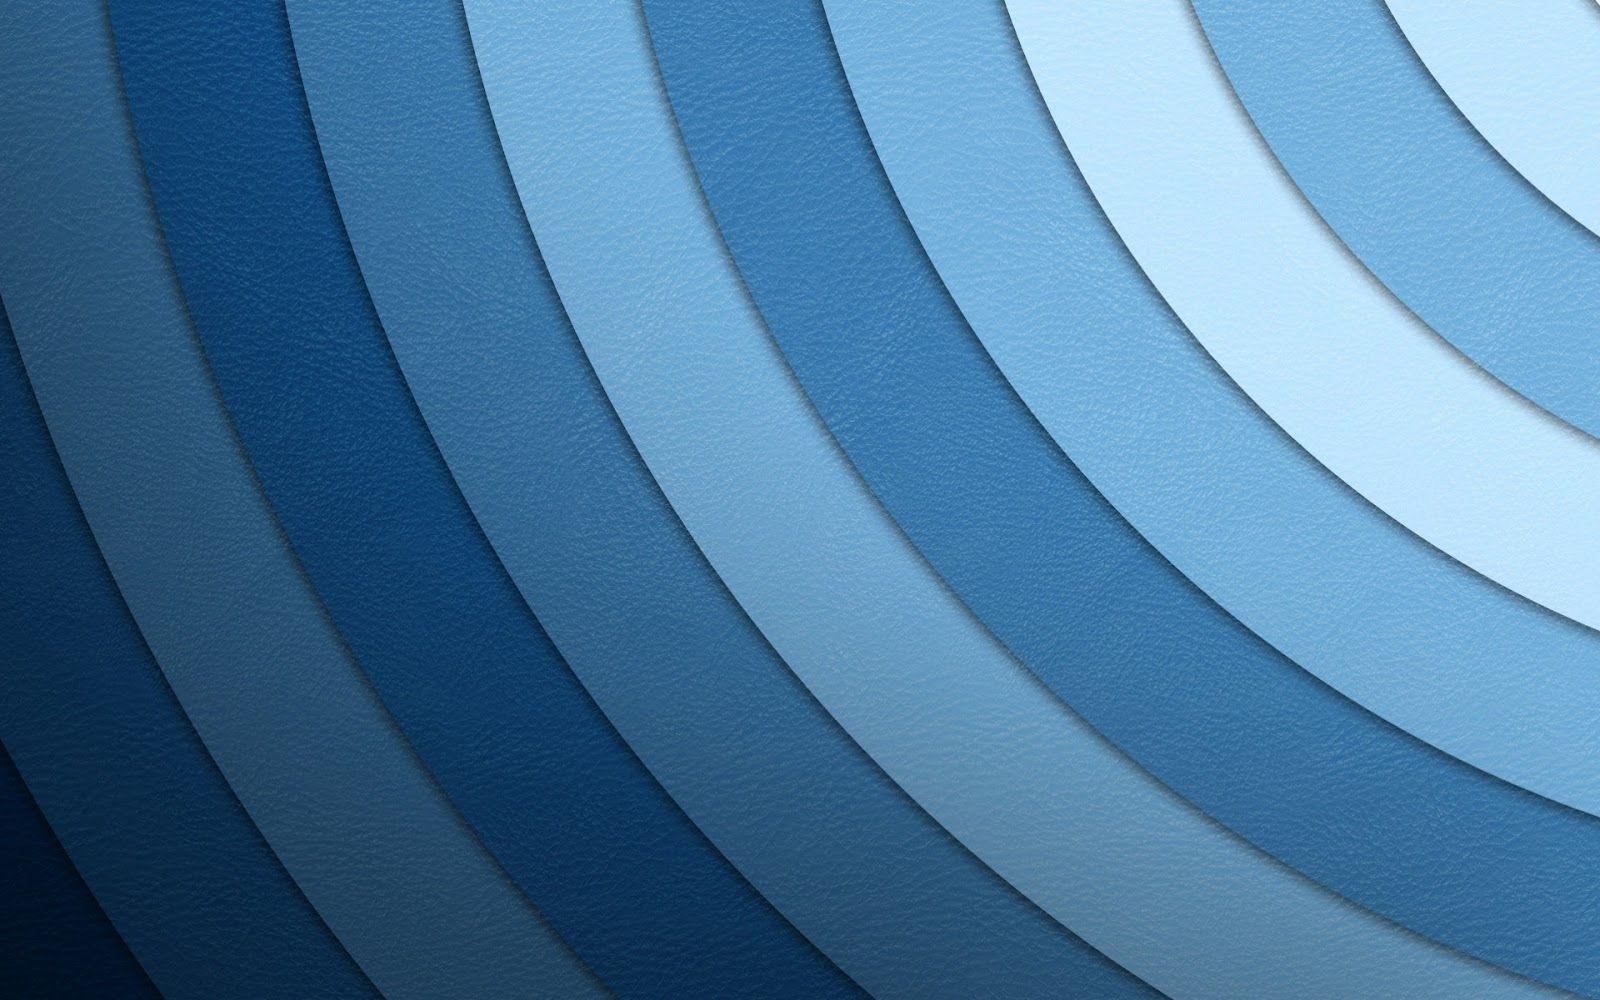 Blue Wallpaper 46 stunning widescreen 26136 HD Wallpaper. Wallroro